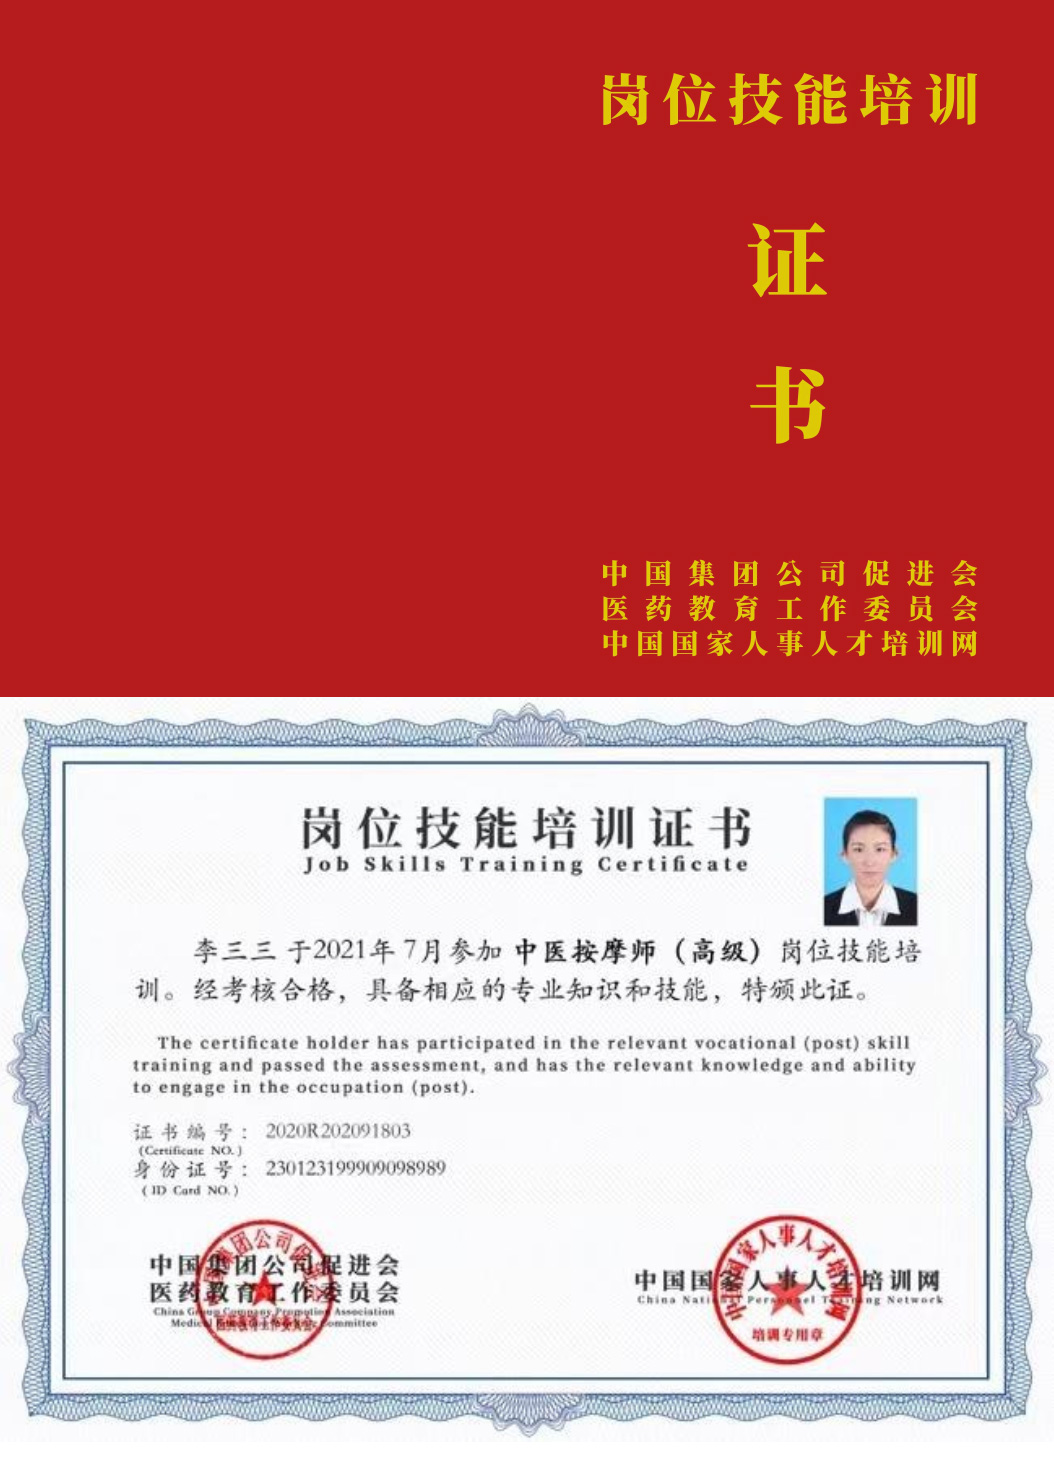 中国国家人事人才培训网 康复理疗师 岗位技能培训证书